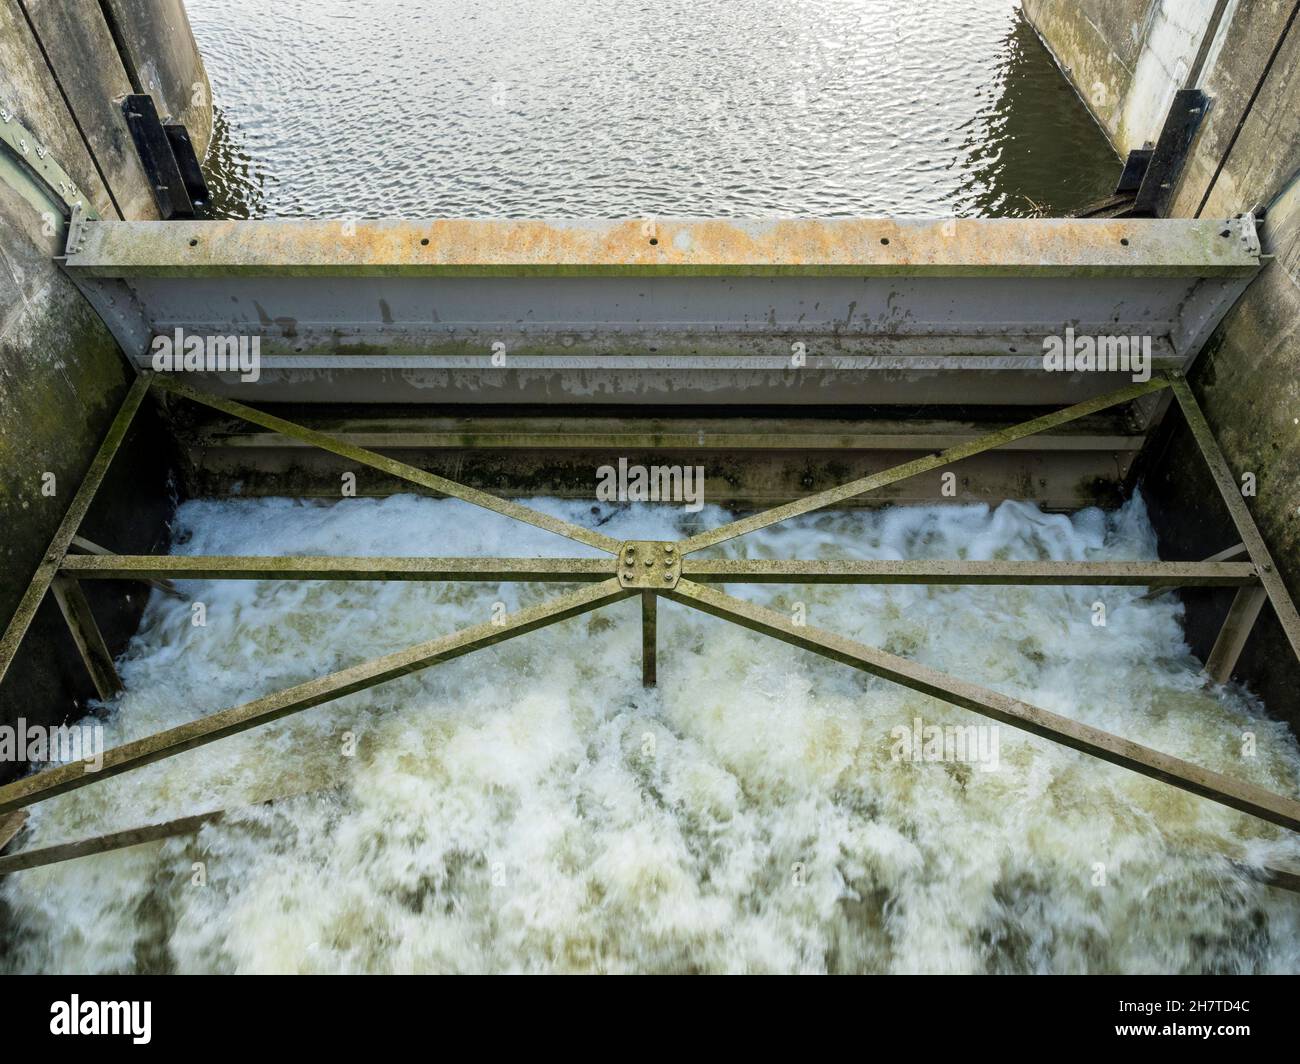 Primo piano di Earith Sluice che controlla il flusso d'acqua nto the Old Bedford River, Earith, Cambs Foto Stock